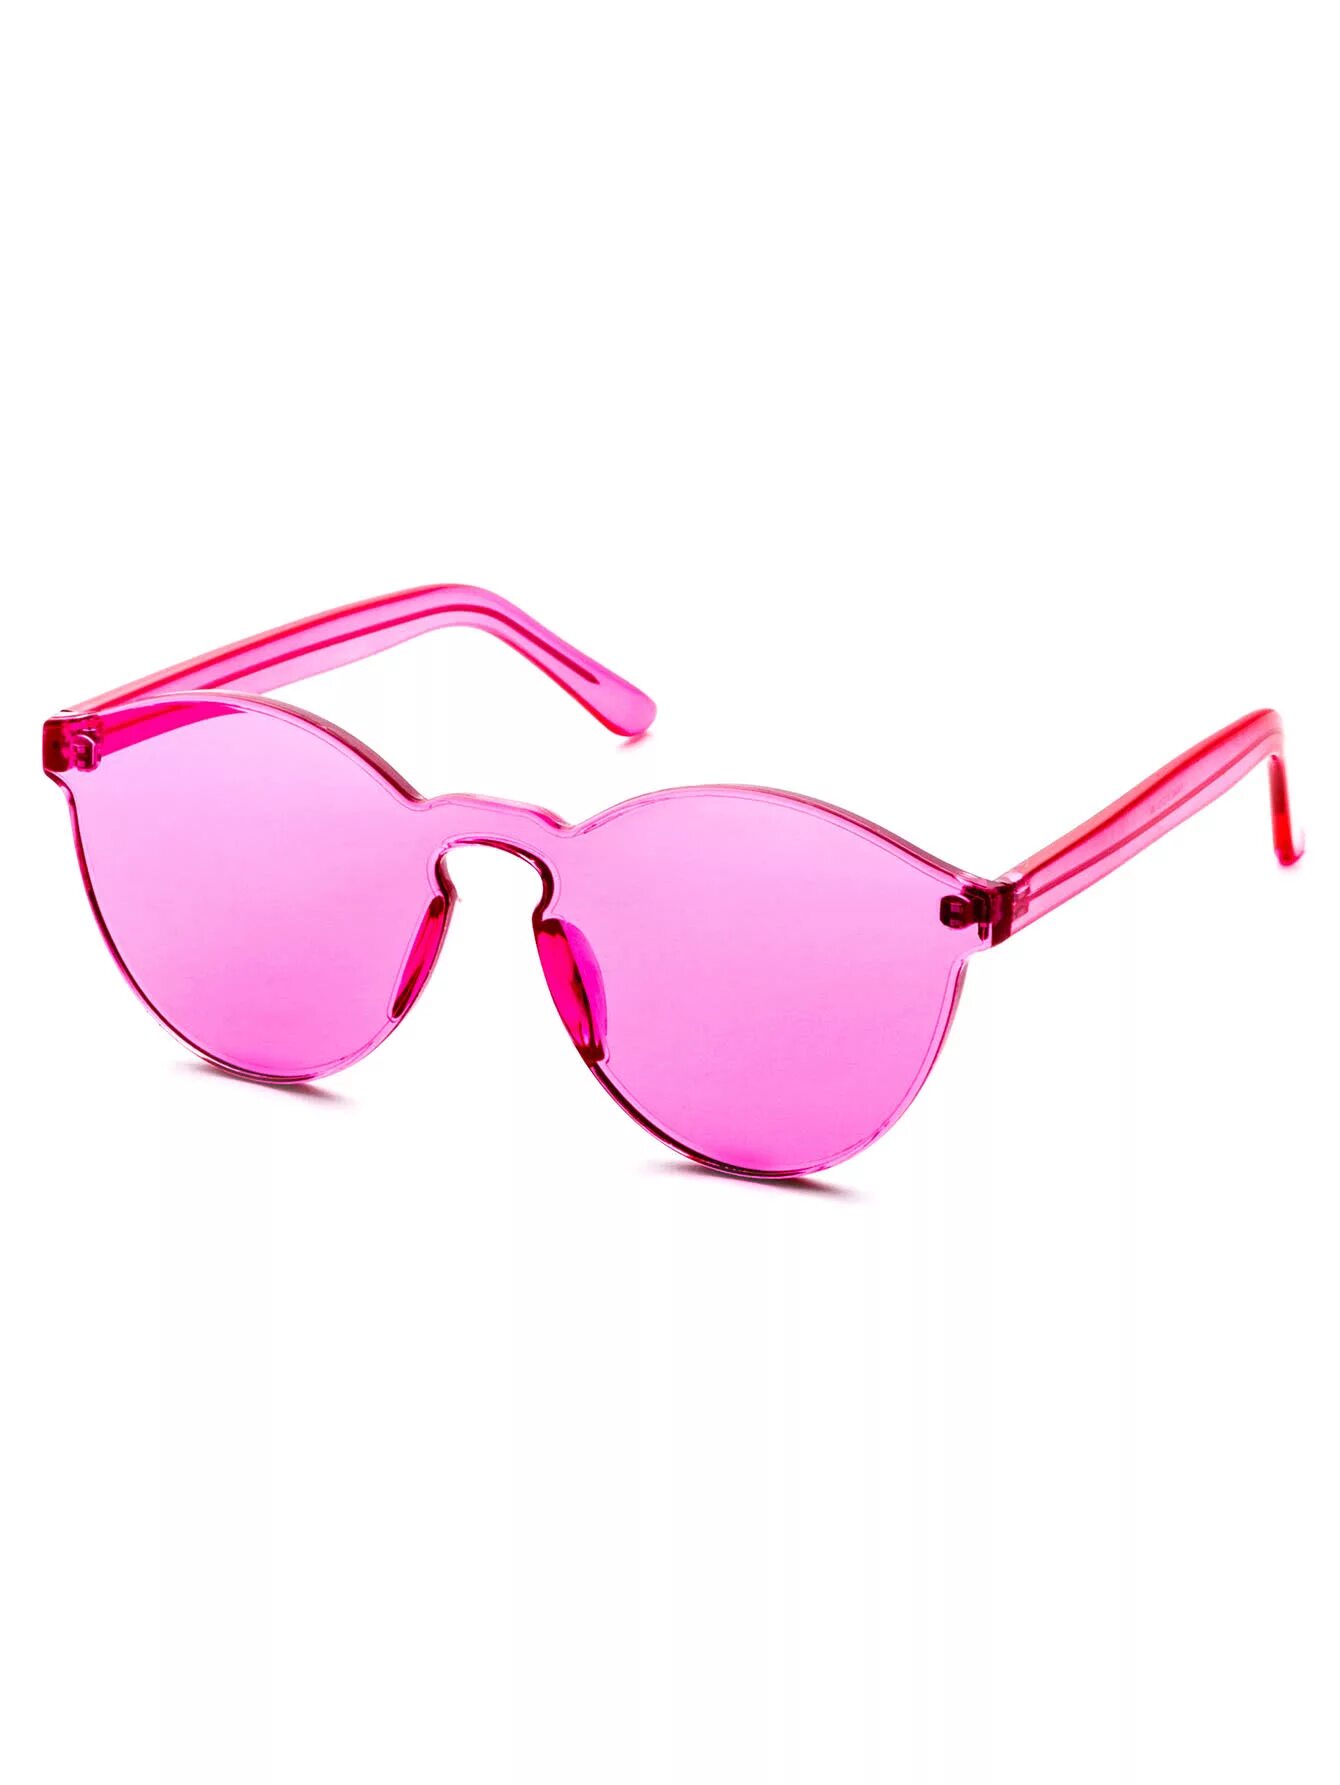 Розовые очки. Розовые солнцезащитные очки. Розовые очки женские. Розовые солнечные очки женские. Без розовых очков